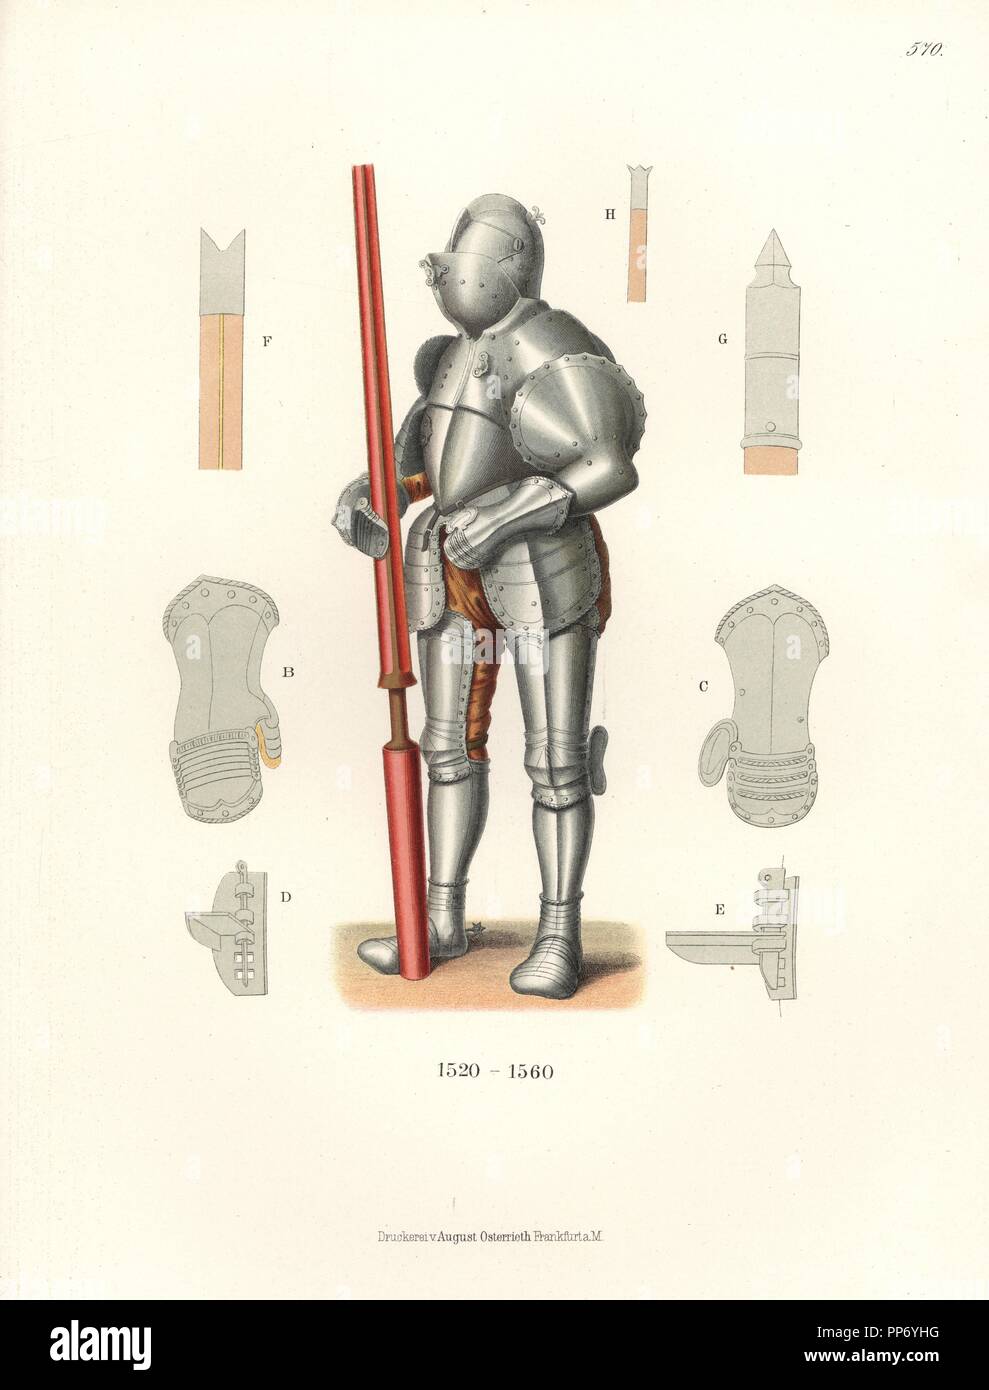 Caballero alemán en armaduras medievales, de mediados del siglo XVI.  Guanteletes B,C, y puntas de lanza para diferentes tipos de torneos F,G,H.  A partir de una armadura de Dresden, el Museo de